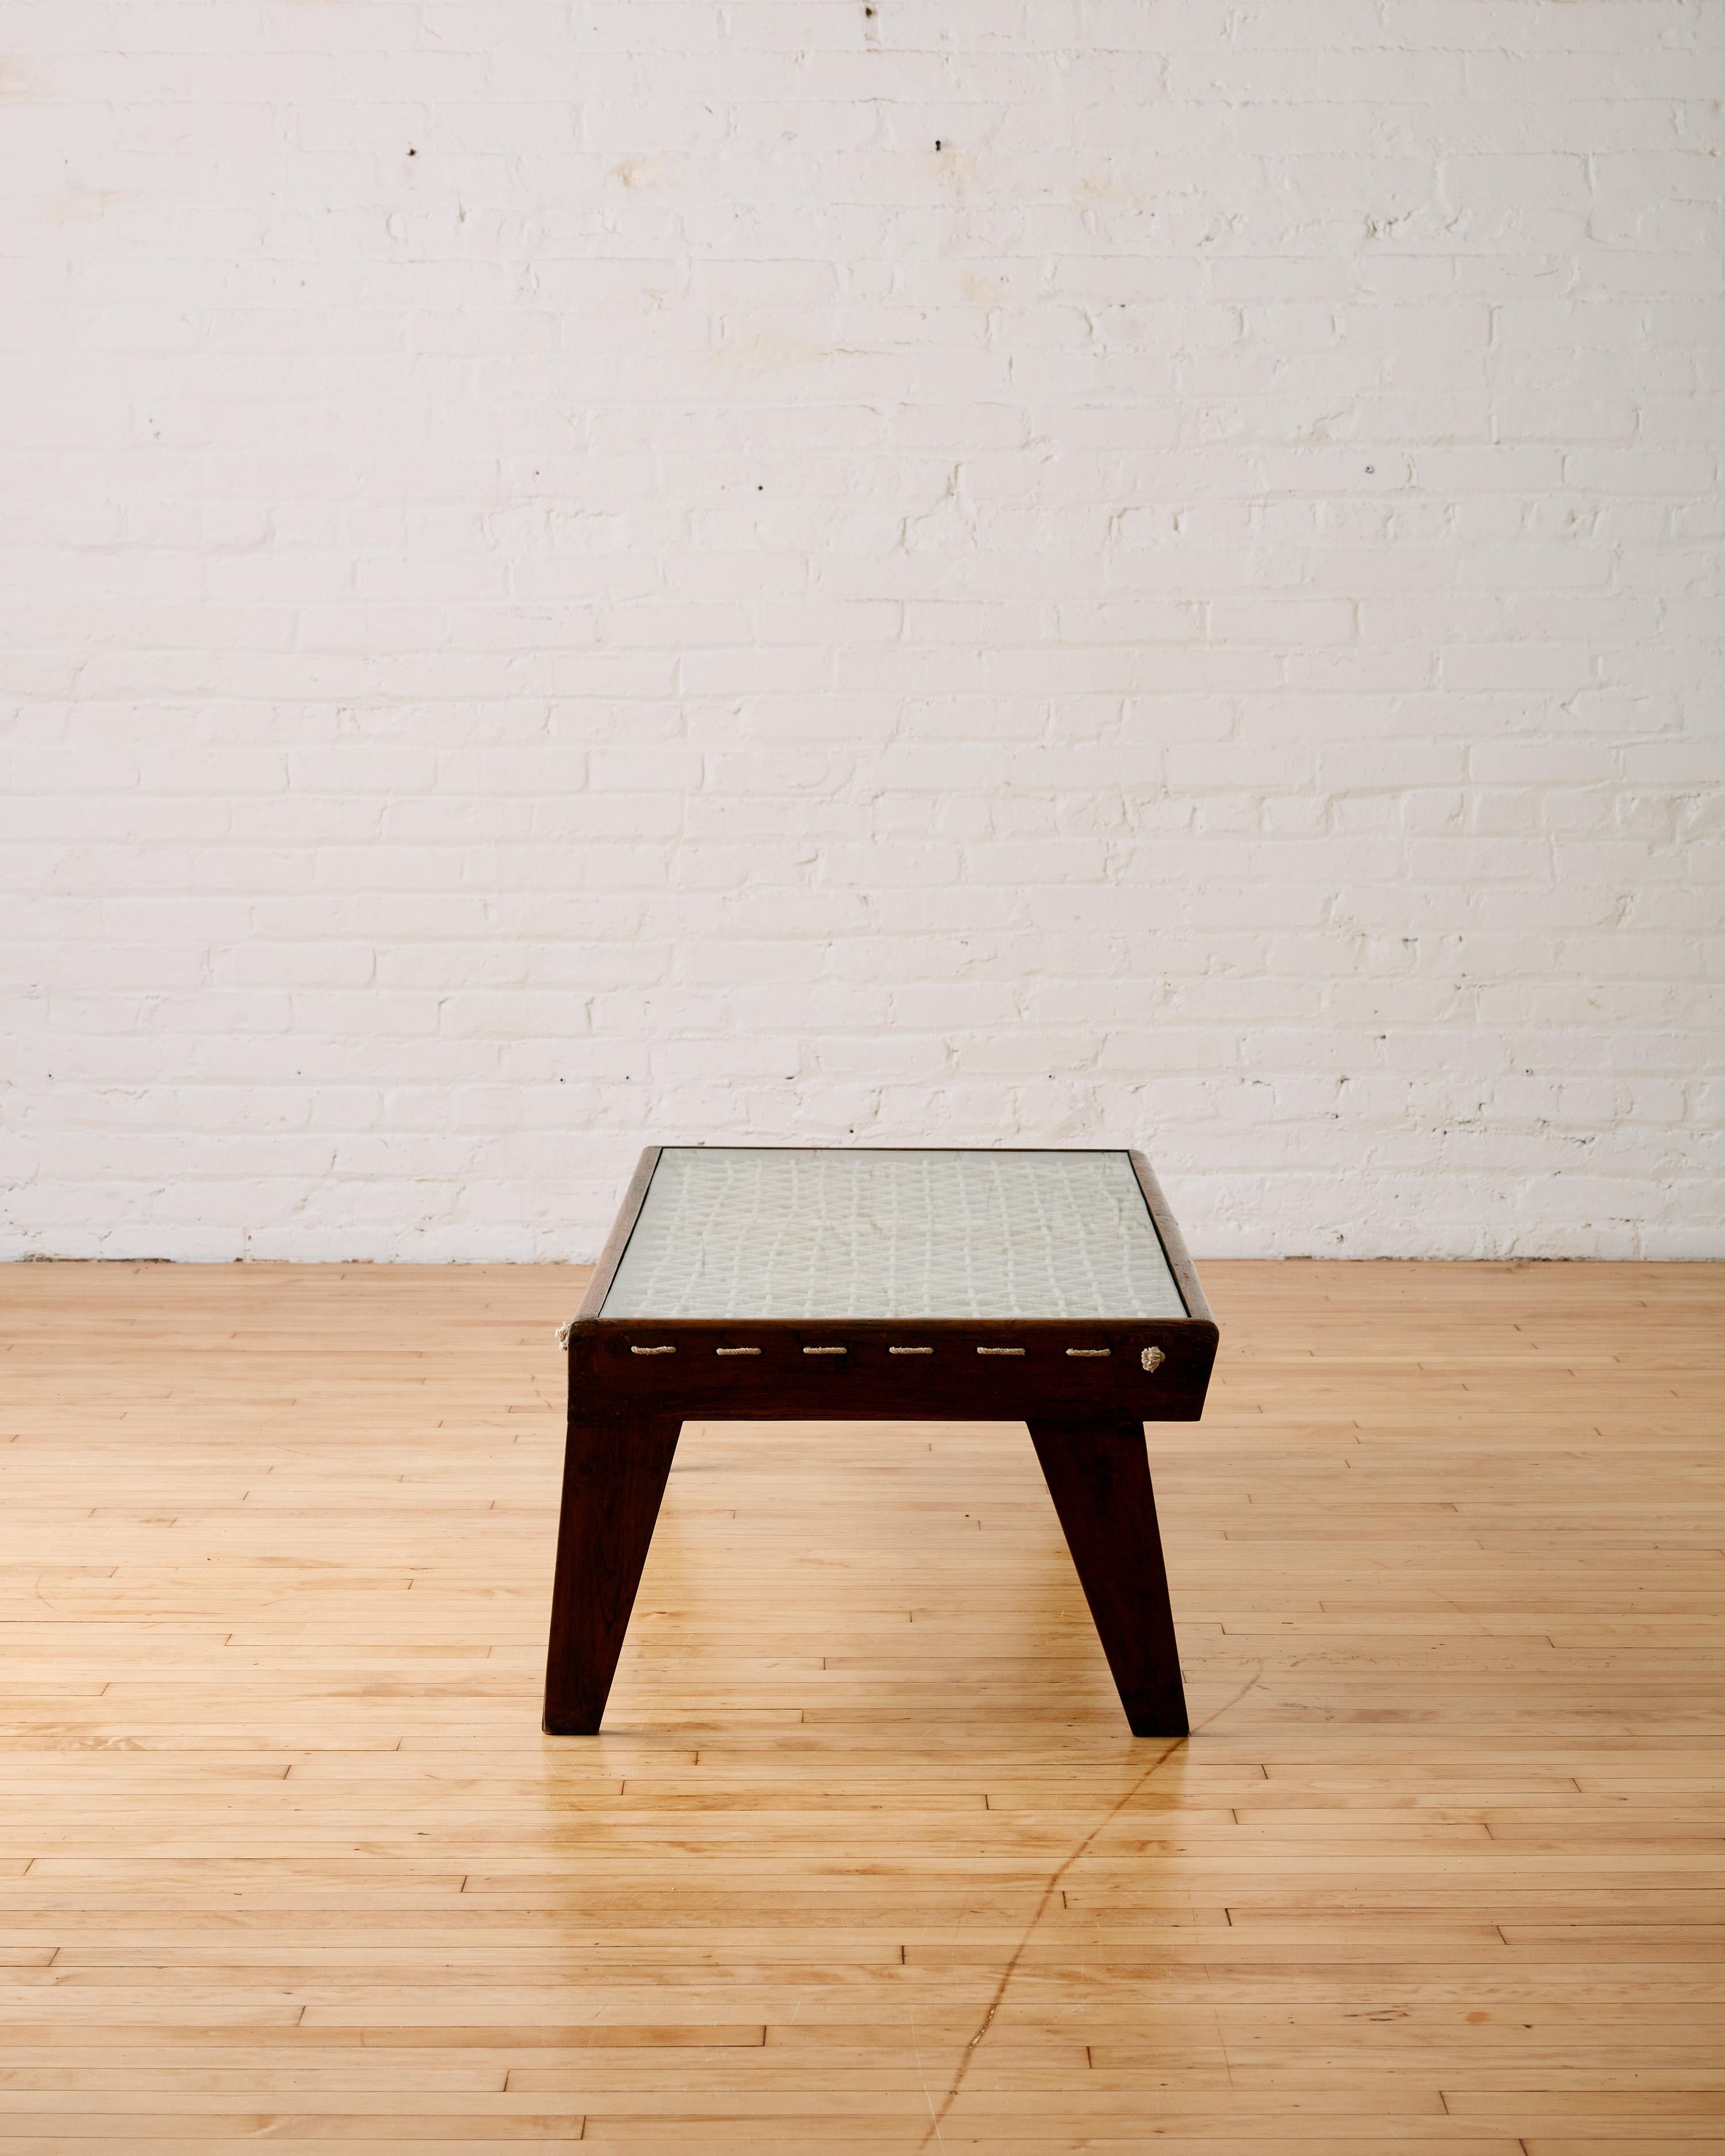 Rare table basse rectangulaire en corde de Pierre Jeanneret, vers les années 1960, fabriquée en bois de teck avec quatre pieds effilés. Il se compose d'un plateau de table en verre avec des détails en corde tressée en dessous, disposés en